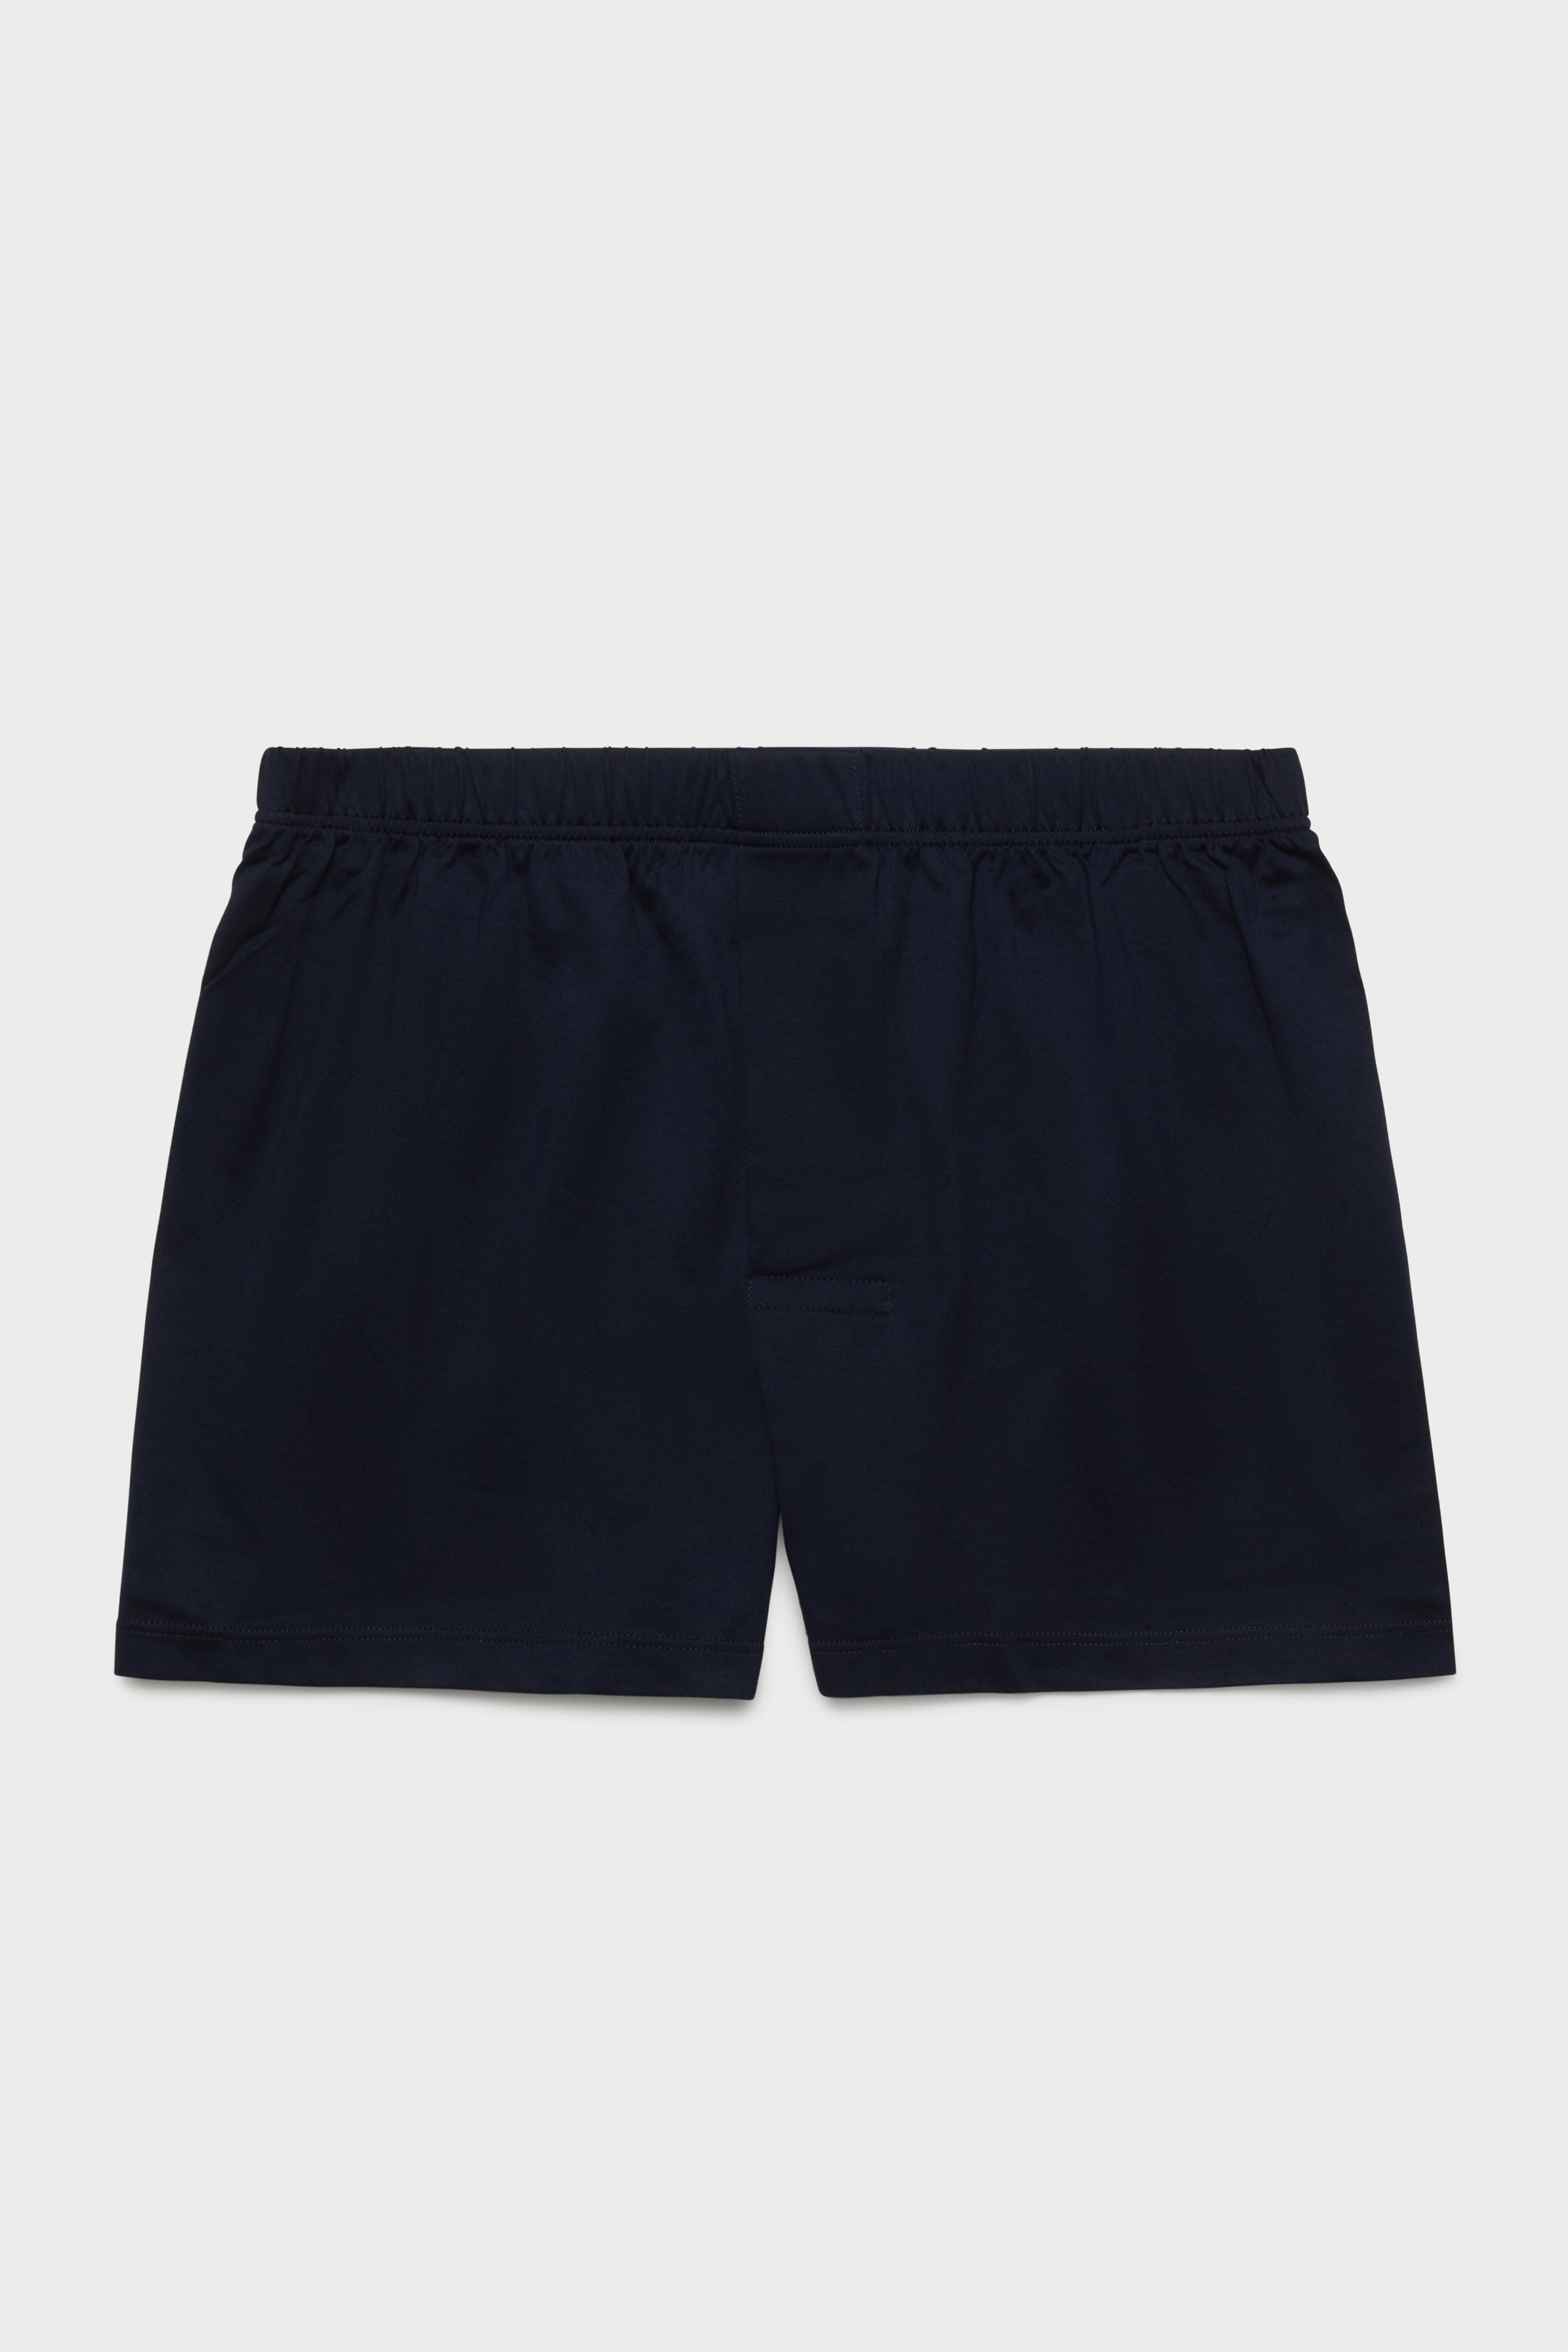 BRESCIANI - men's underwear. Classic Boxers. Cotton. Navy – Bresciani Shop